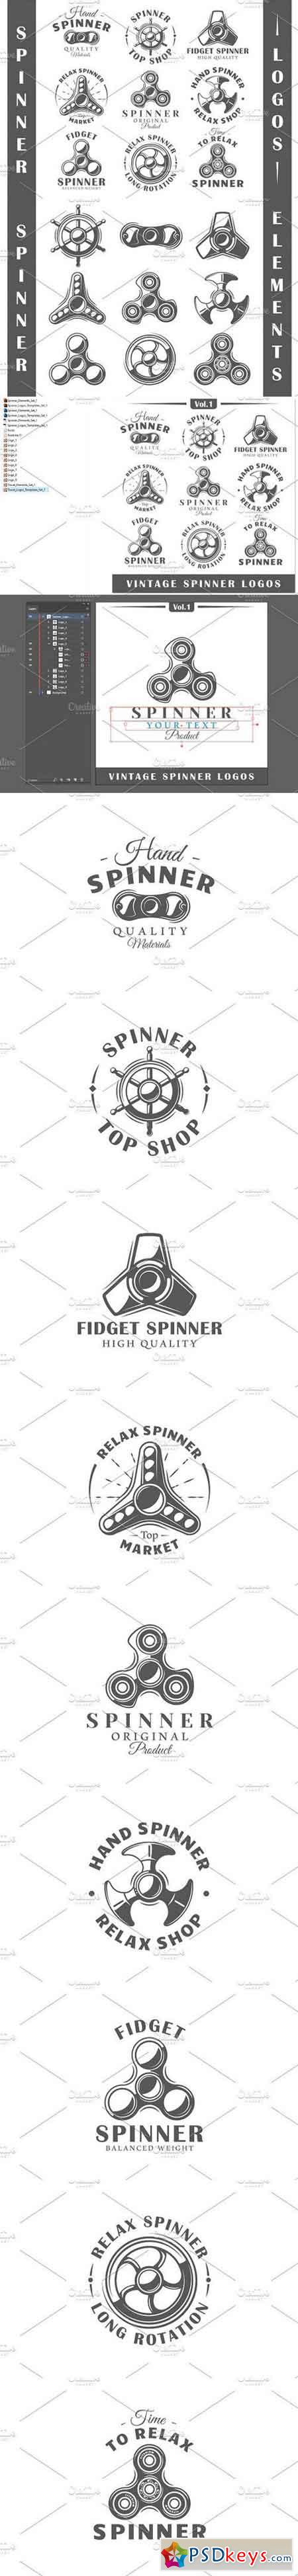 9 Spinner Logos Templates Vol.1 1643541